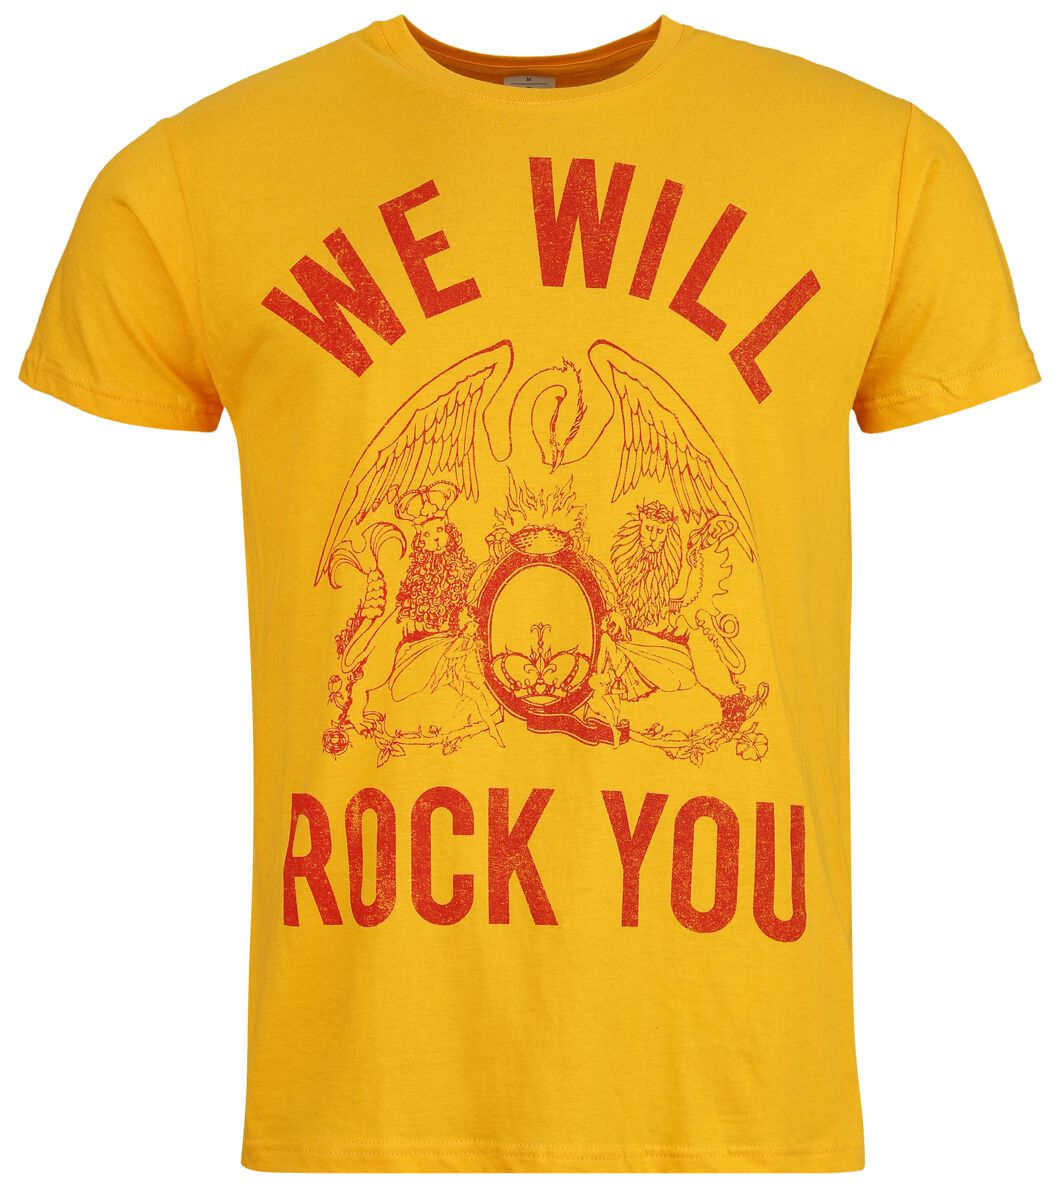 Queen T-Shirt - We Will Rock You - S bis XL - für Männer - Größe M - orange  - Lizenziertes Merchandise!